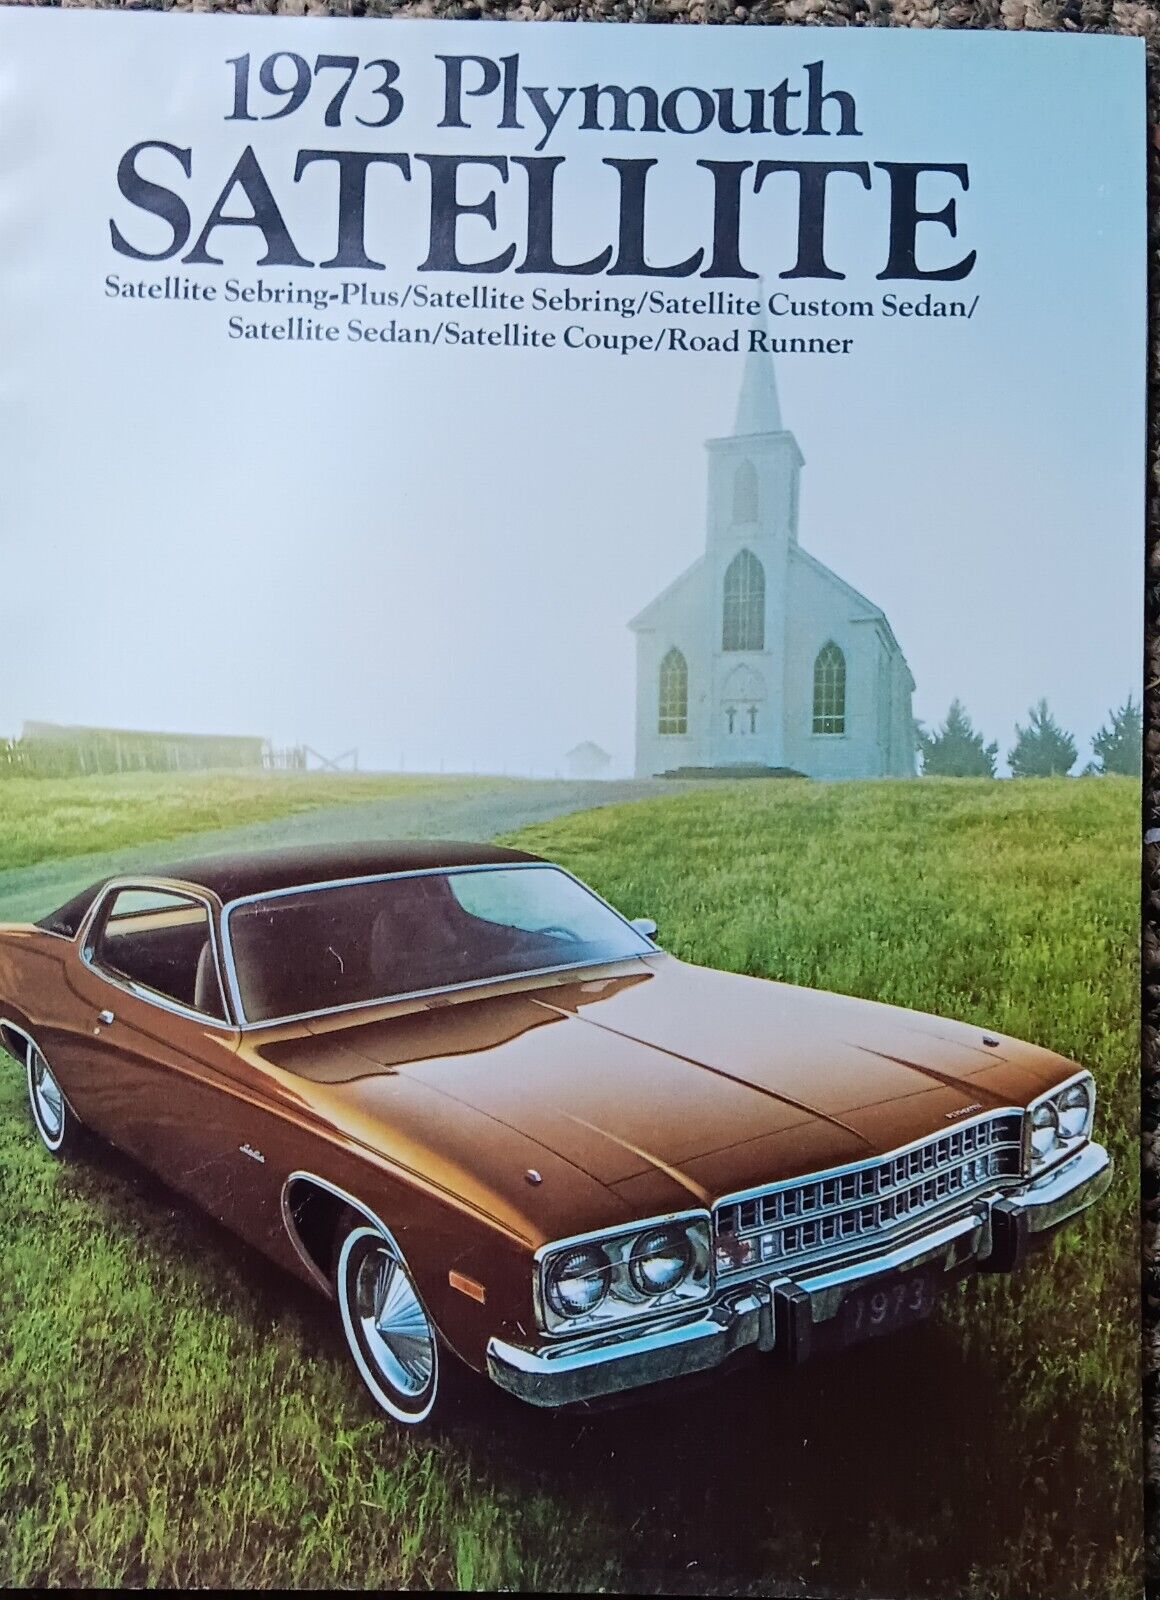 1973 Plymouth Satellite/Sebring Plus Antique Original Car Brochure